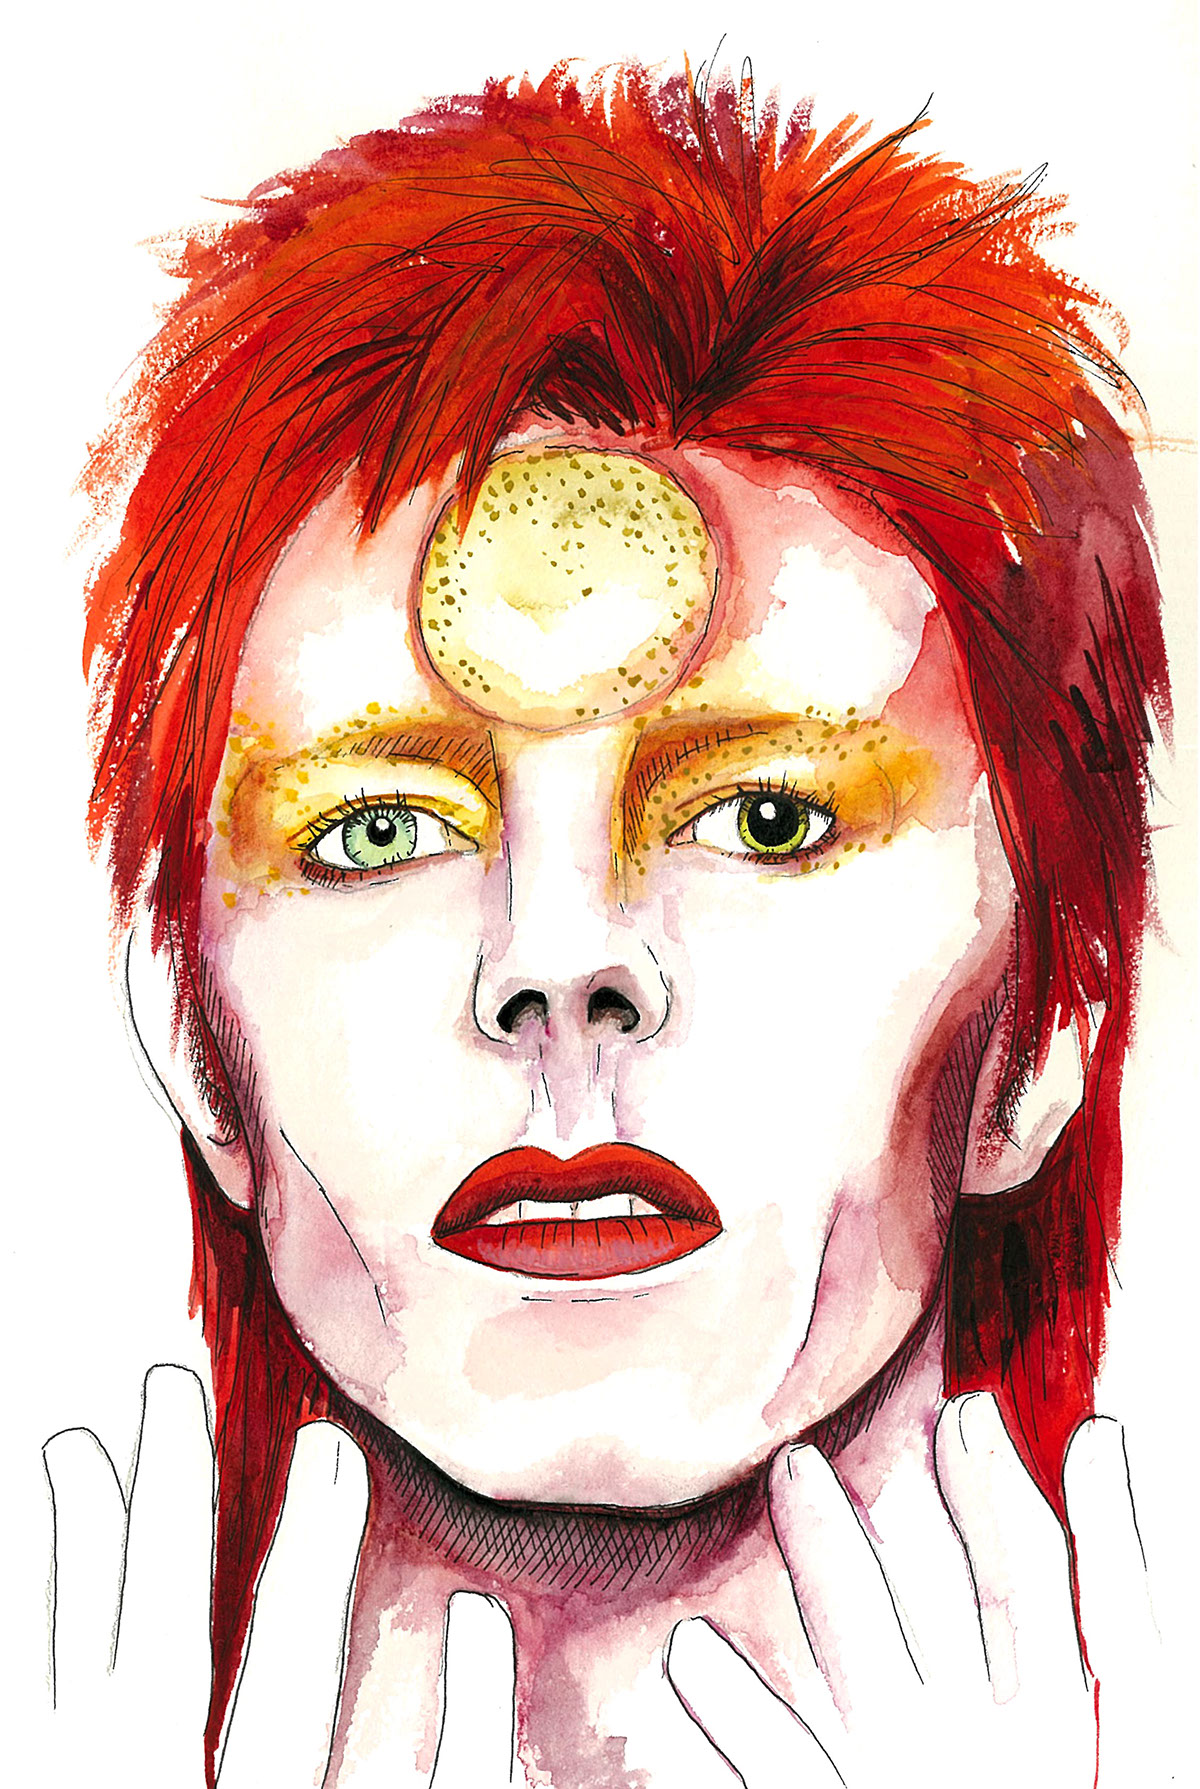 davidbowie david Bowie ziggystardust spidersfrommars tribute pop musician british